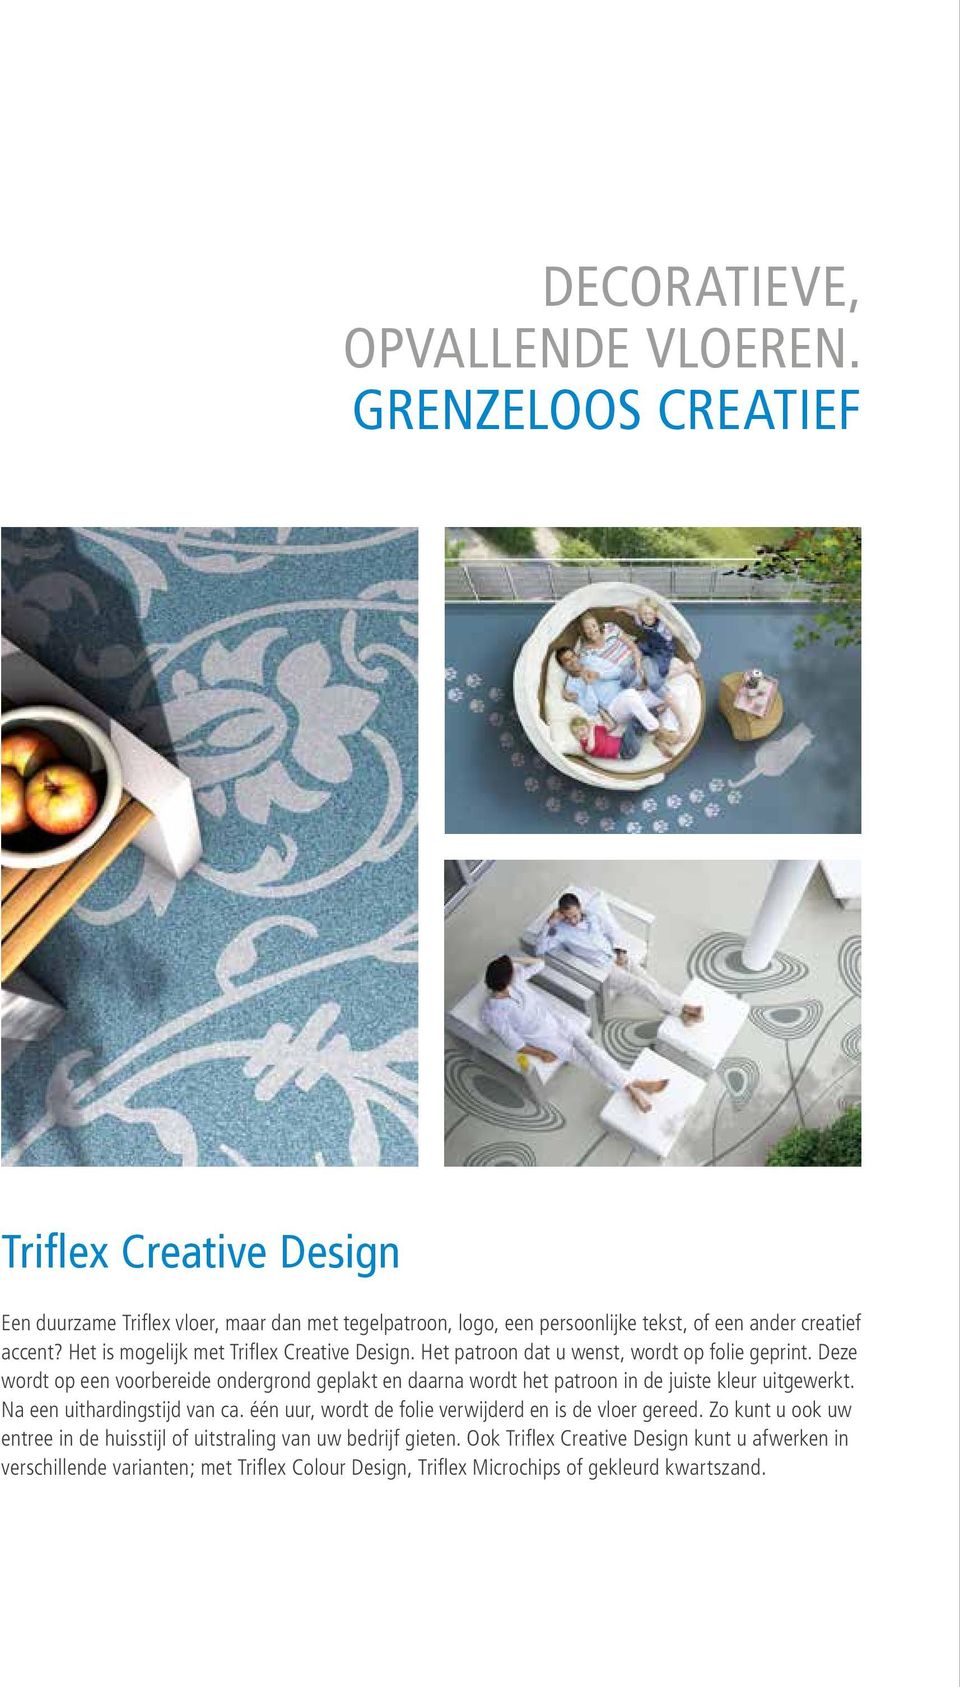 Het is mogelijk met Triflex Creative Design. Het patroon dat u wenst, wordt op folie geprint.